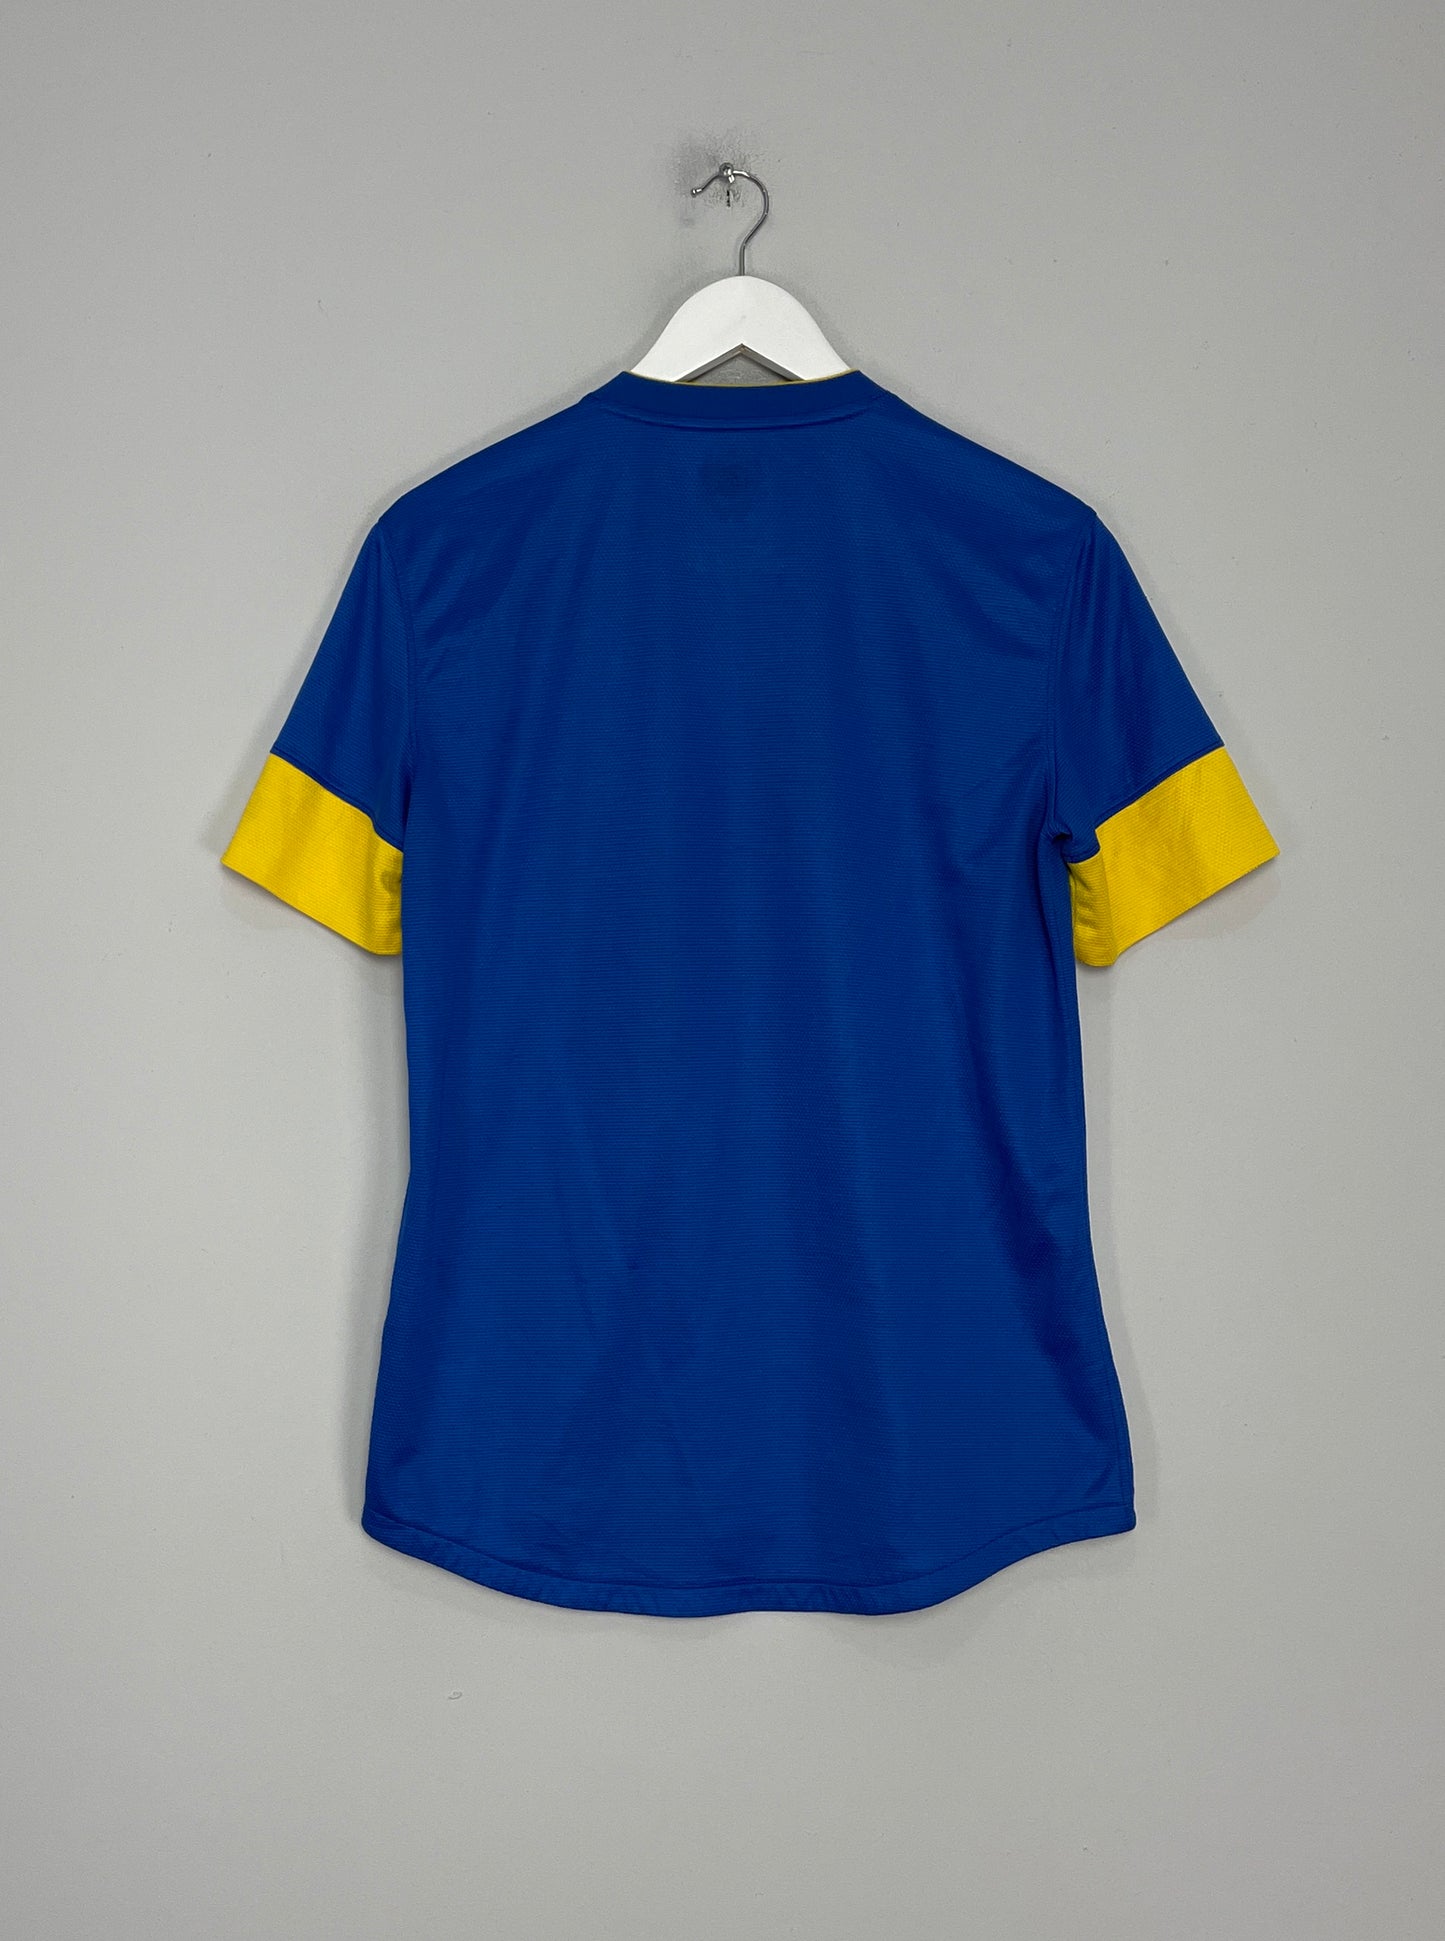 BRAZIL NIKE 2012-13 Away Football Shirt Soccer Jersey Camiseta Camisa Mens  XL £46.95 - PicClick UK